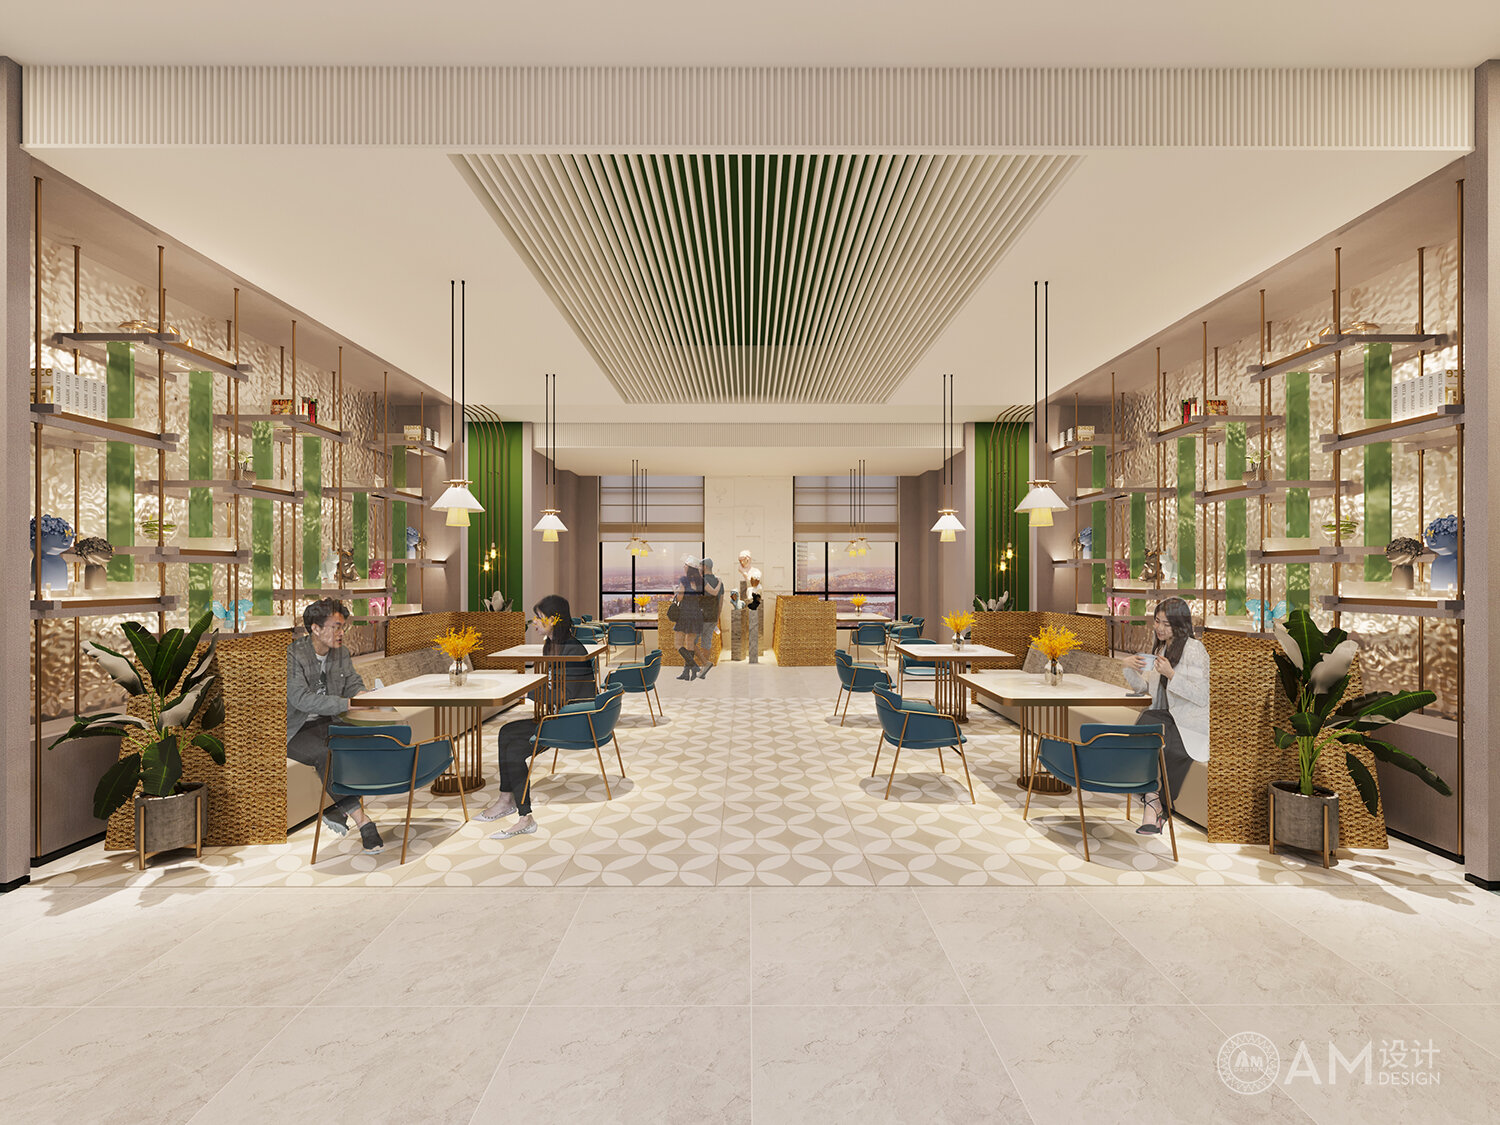 AM DESIGN | Rest area design of Shaanxi Weinan Hotel